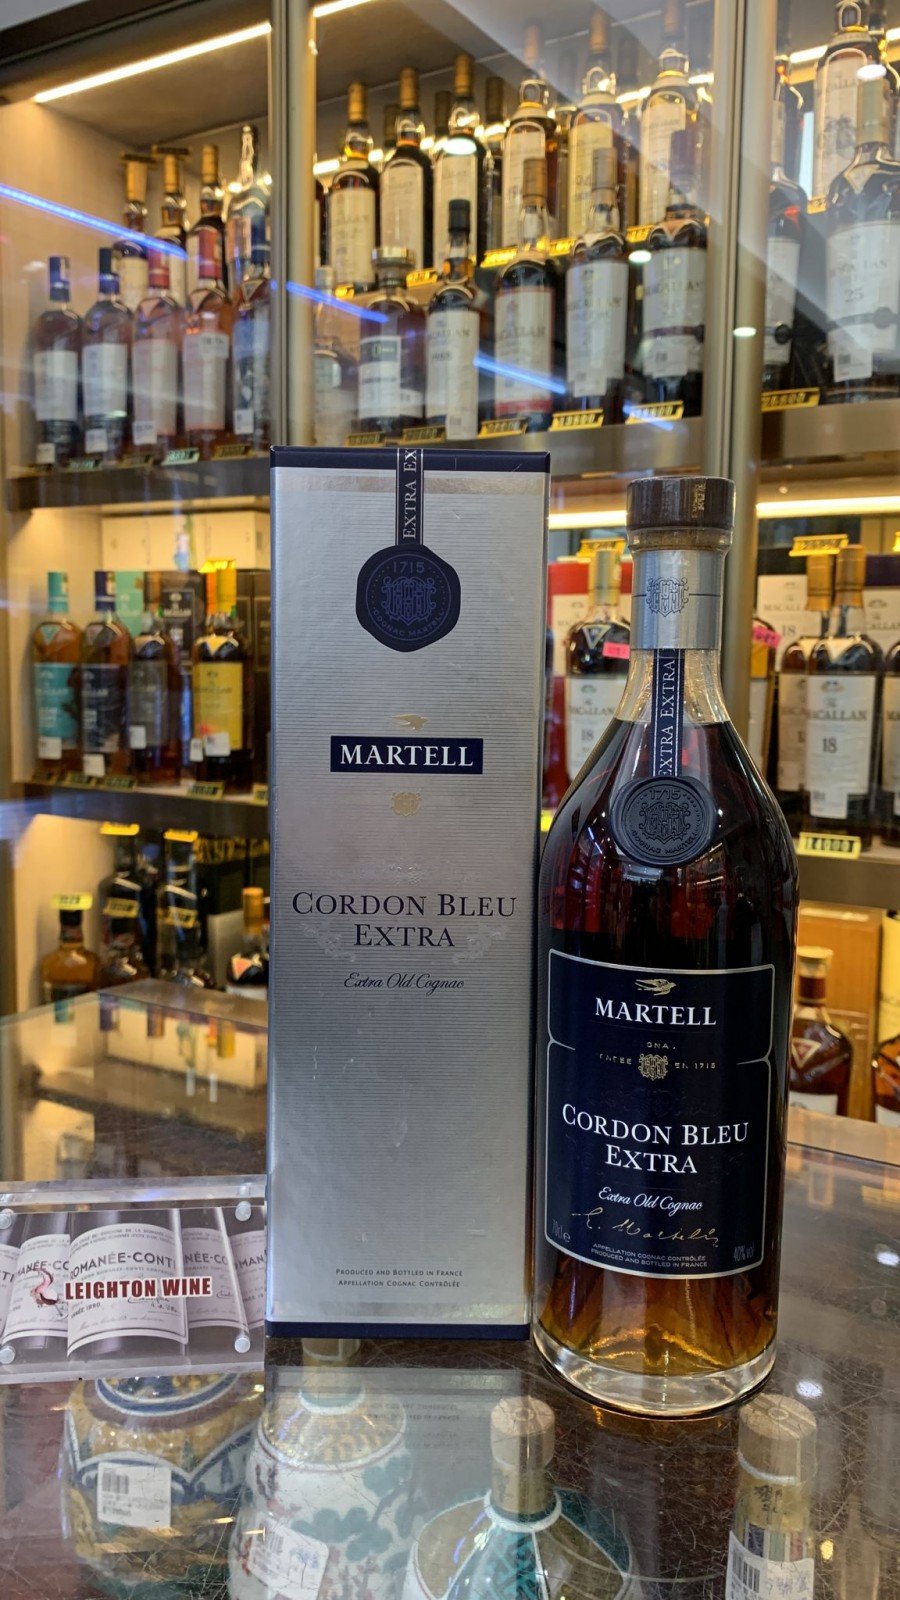 Martell Cordon Bleu Extra 700ml